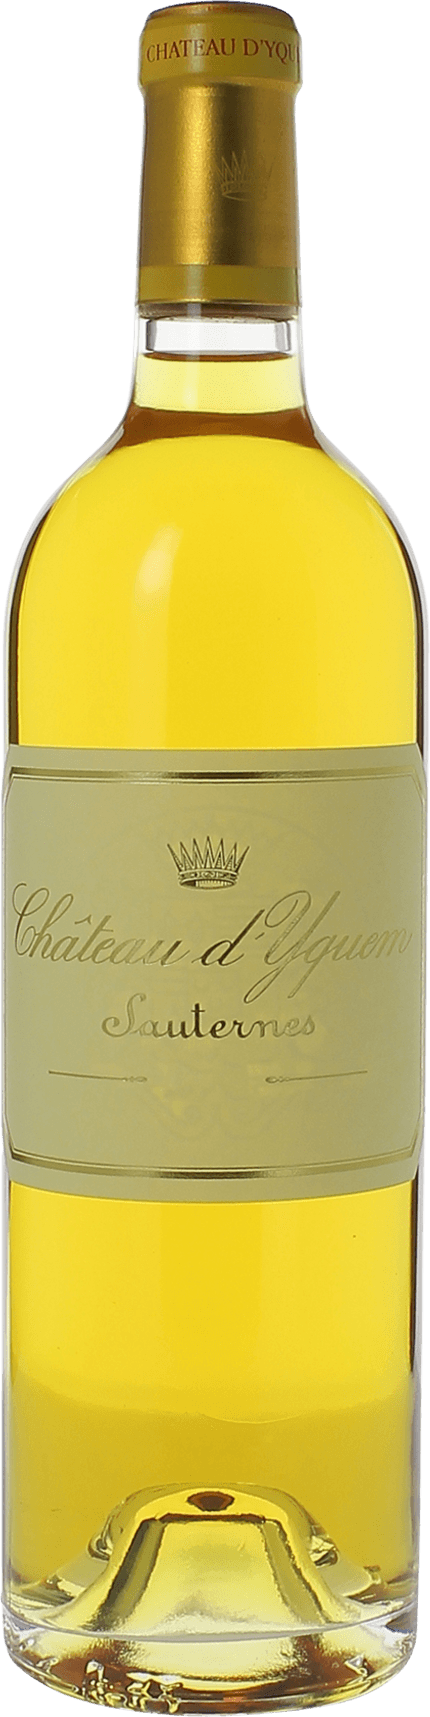 Yquem 1986 1er Cru Suprieur Sauternes, Bordeaux blanc